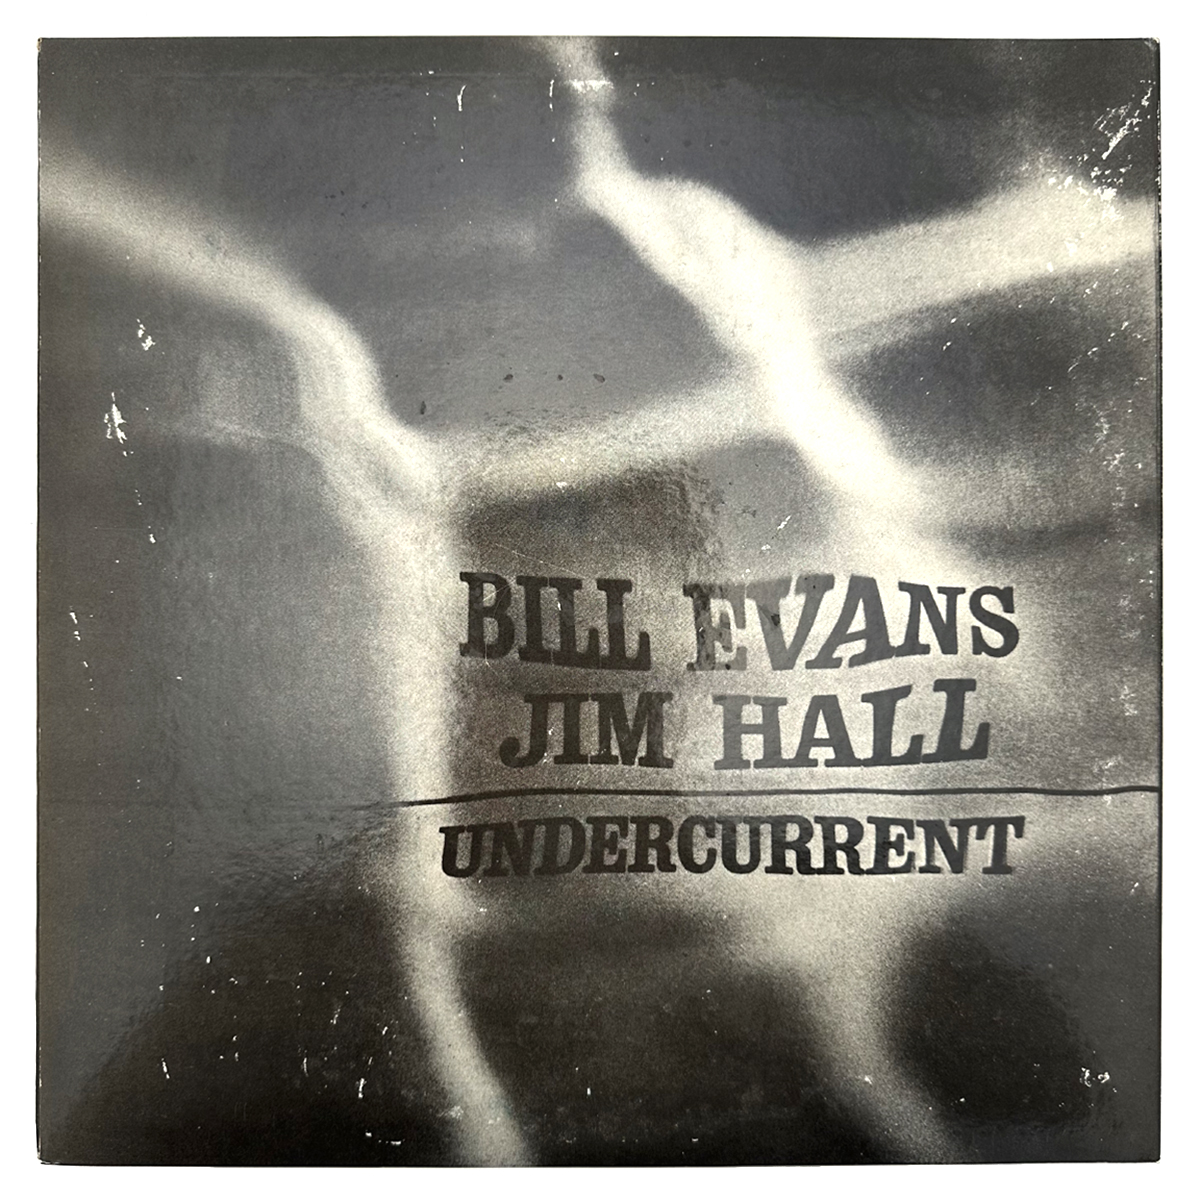 ビル エヴァンス/ジム ホール(BILL EVANS/JIM HALL) レコード UNDERCURRENT SR3084 見開き 国内盤 キング盤  ライナー付き